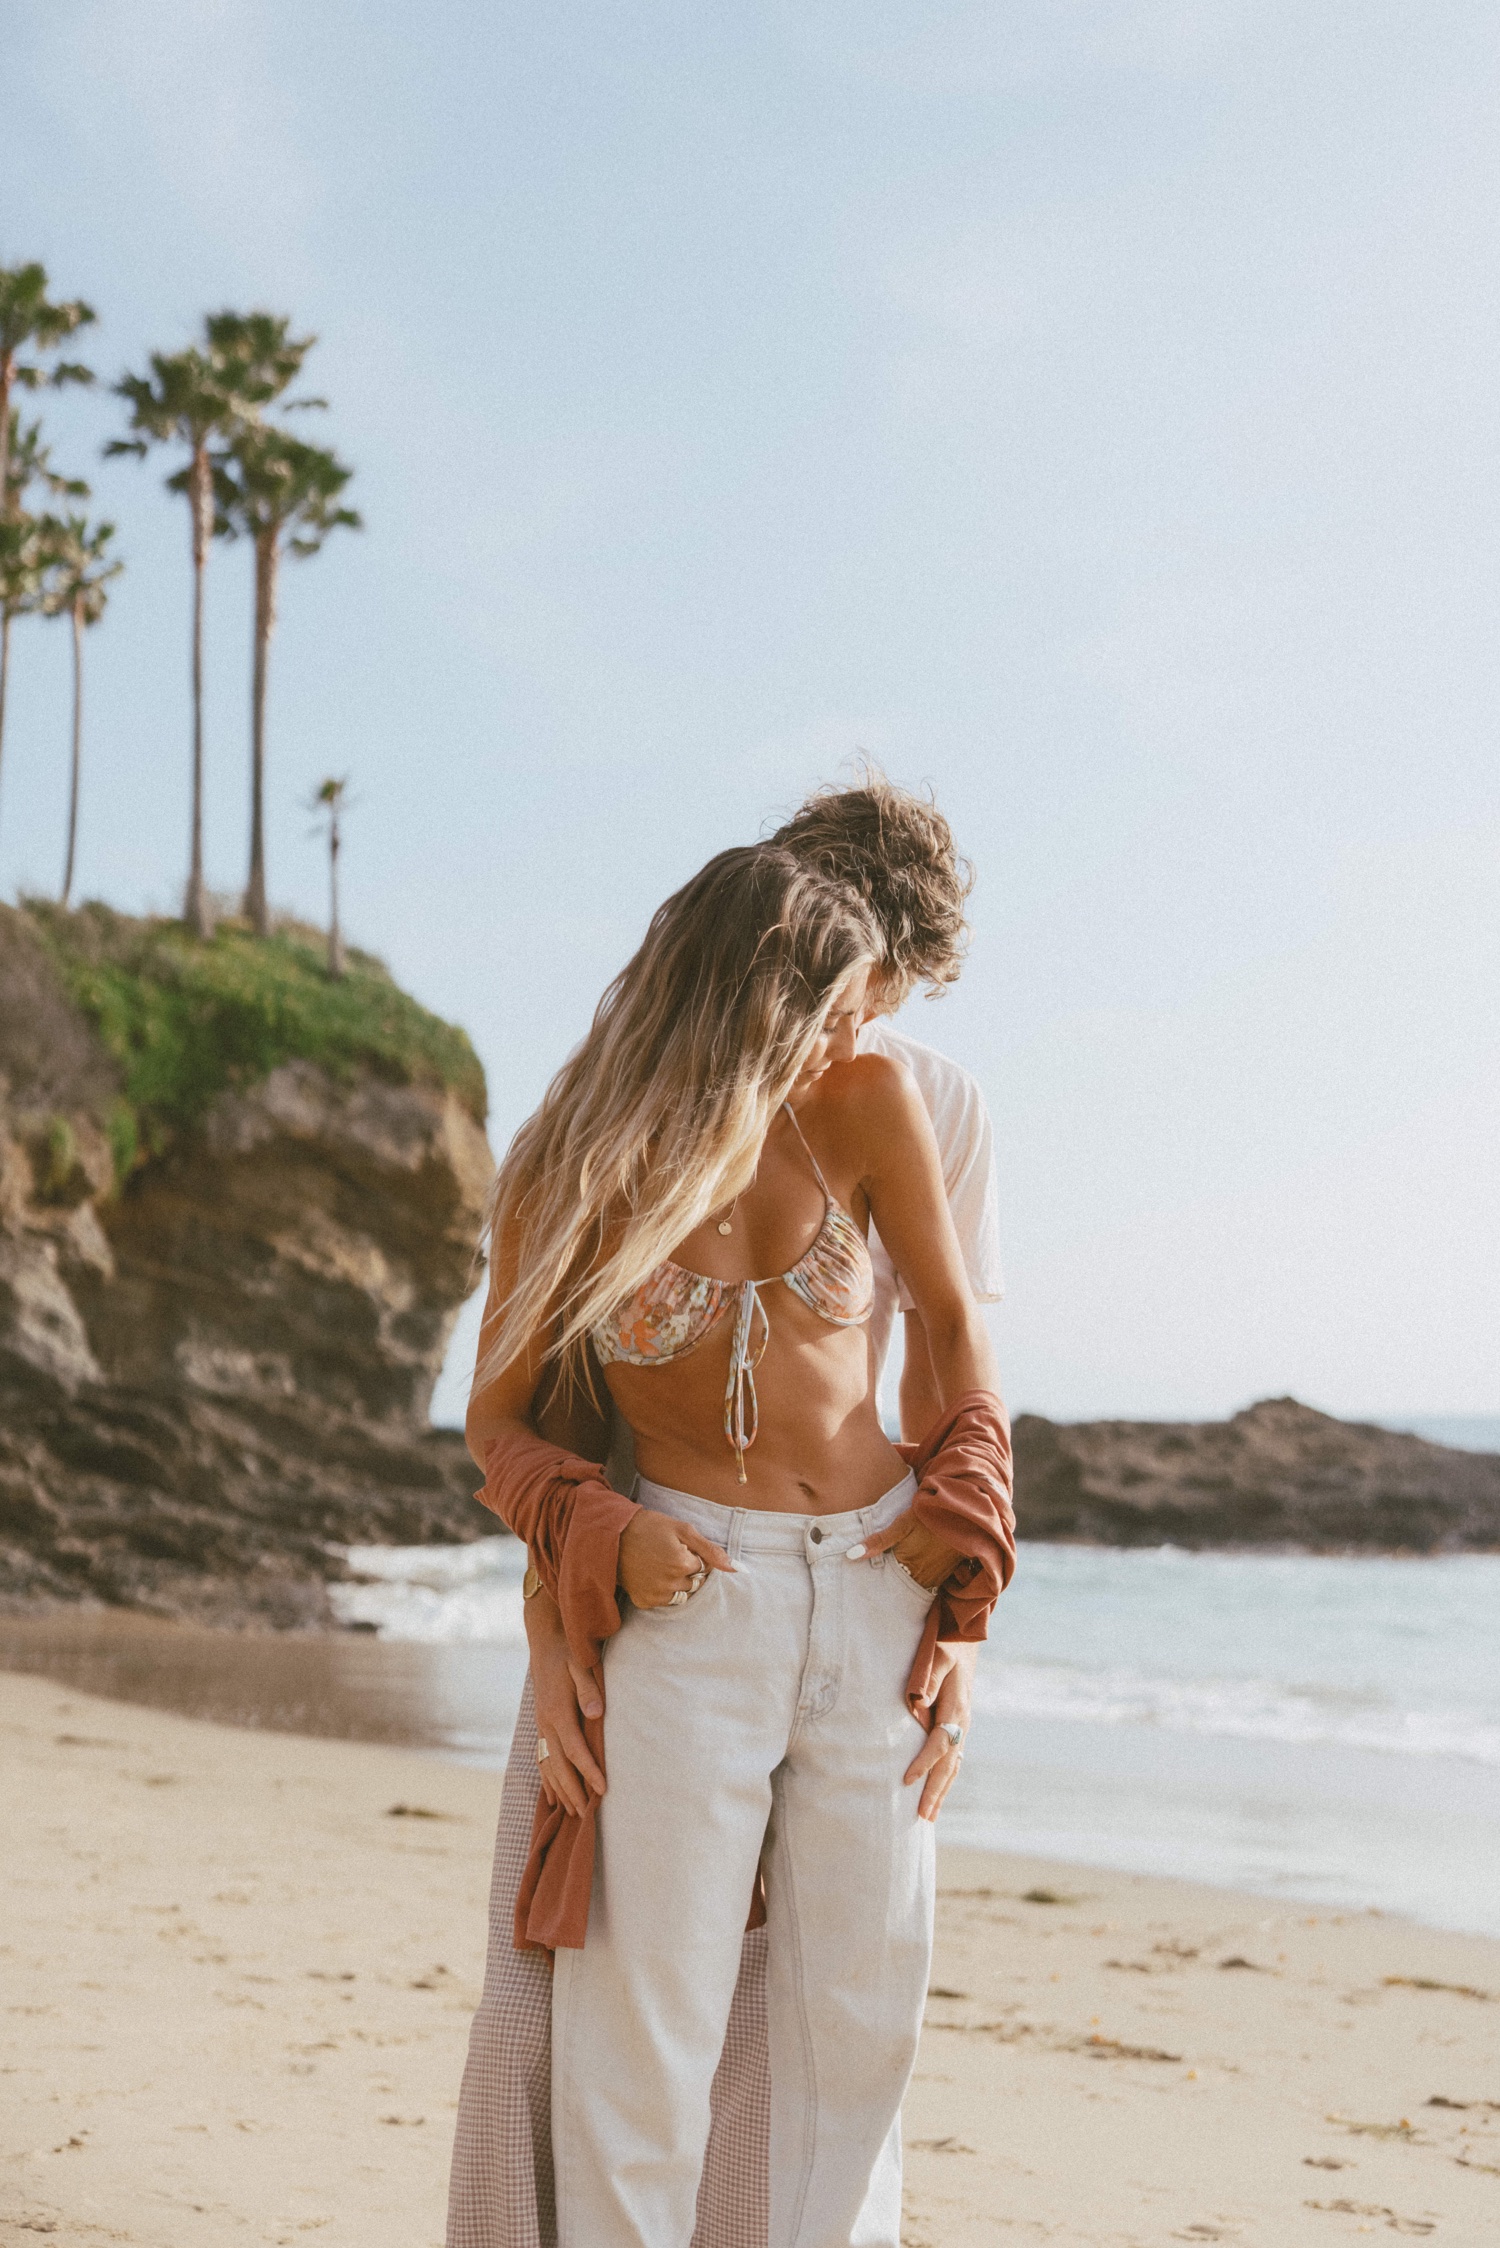 Beach Couple Poses Ideas | Girlfriend-Boyfriend Sunset Photoshoot Ideas On  Beach - YouTube